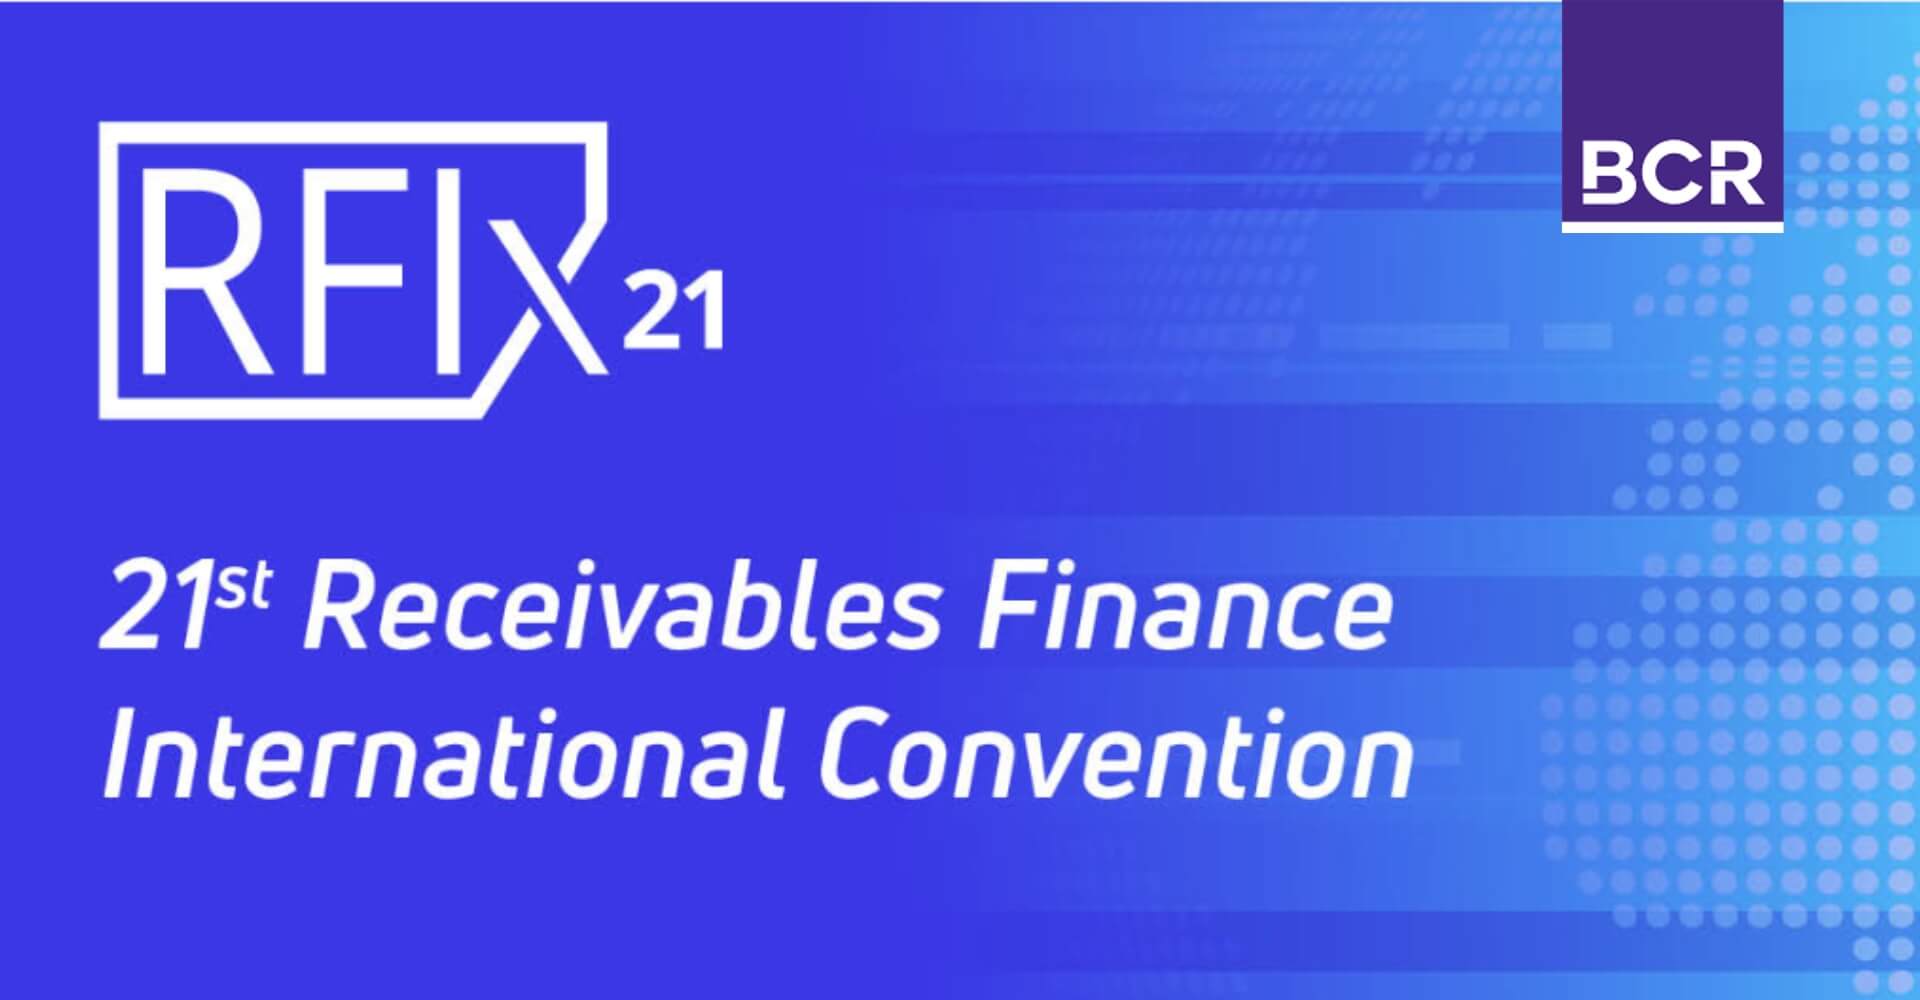 RFIX – Convention Internationale Sur Le Financement De Créances 2021